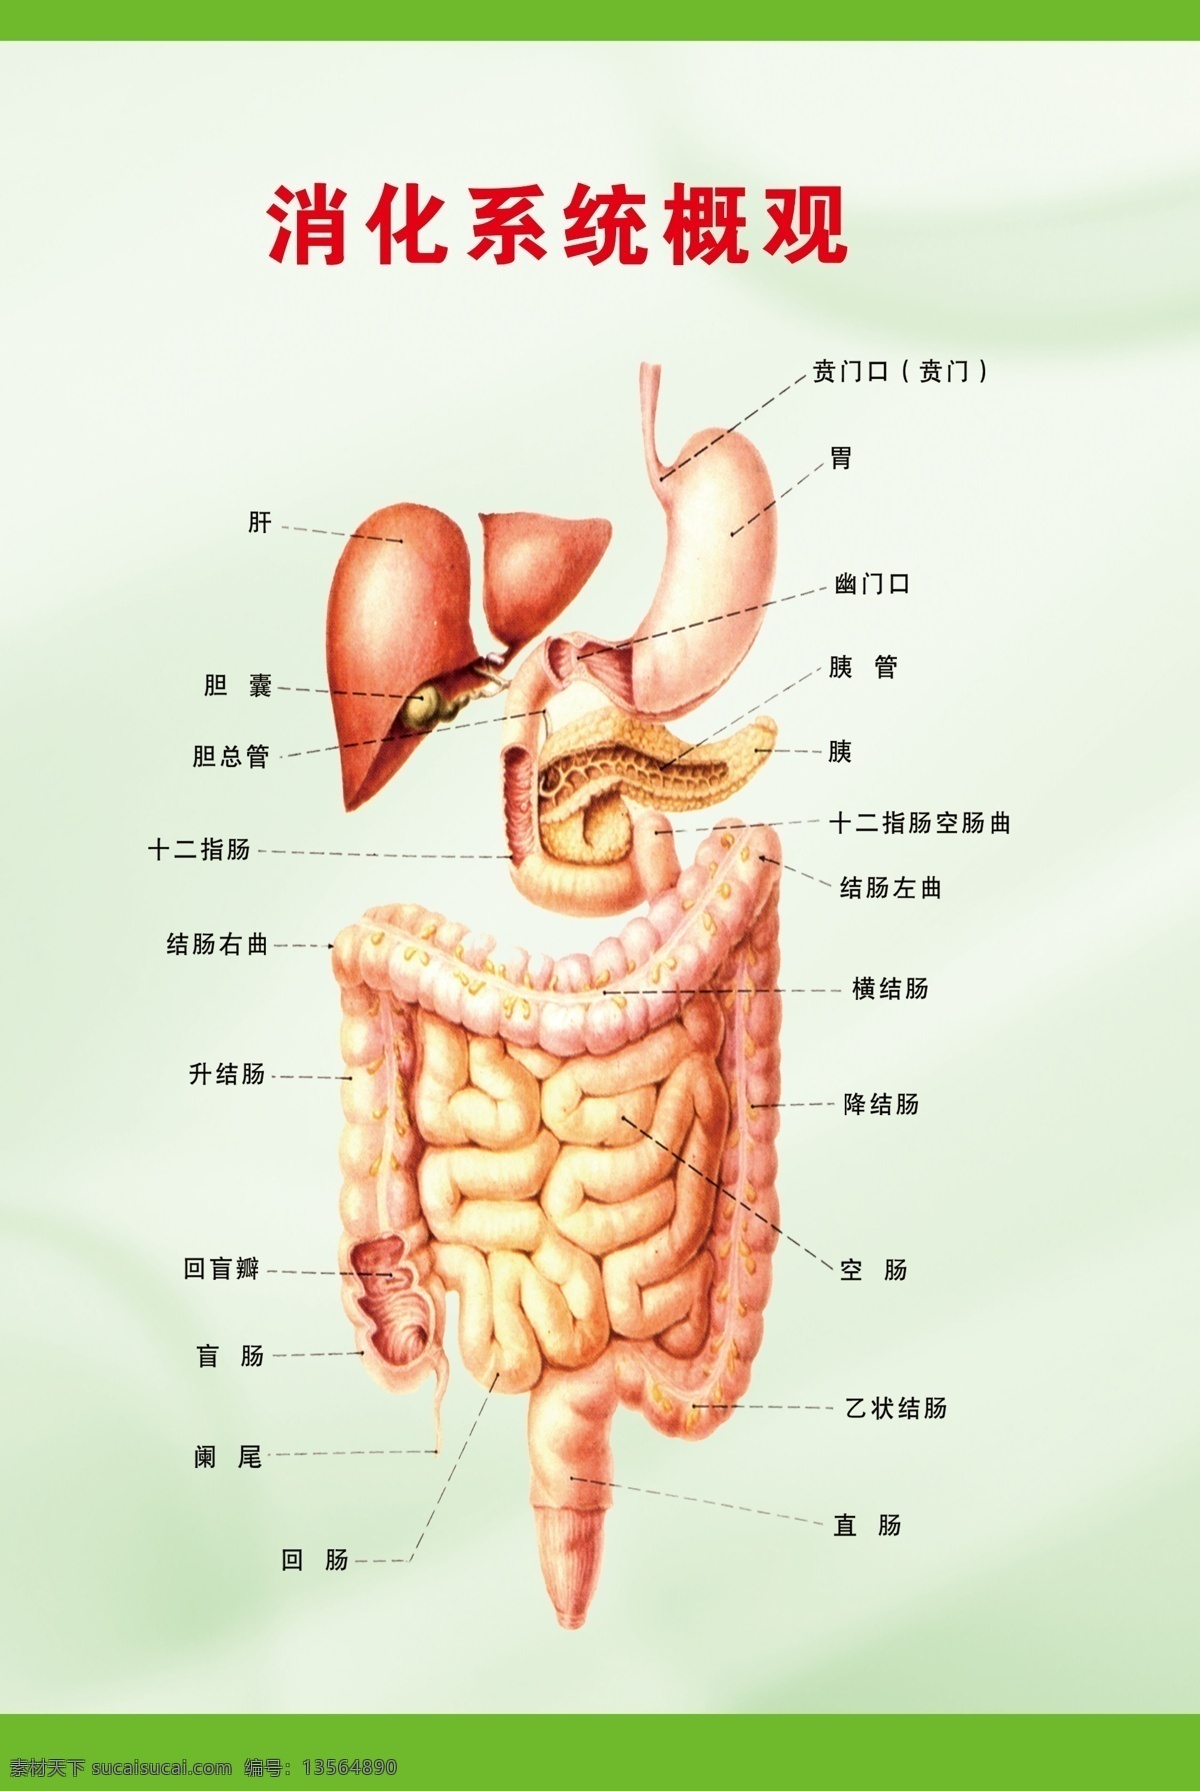 肠 广告设计模板 胃 源文件 展板模板 胃肠 展板 模板下载 胃肠展板 解剖 消化 概观 其他展板设计